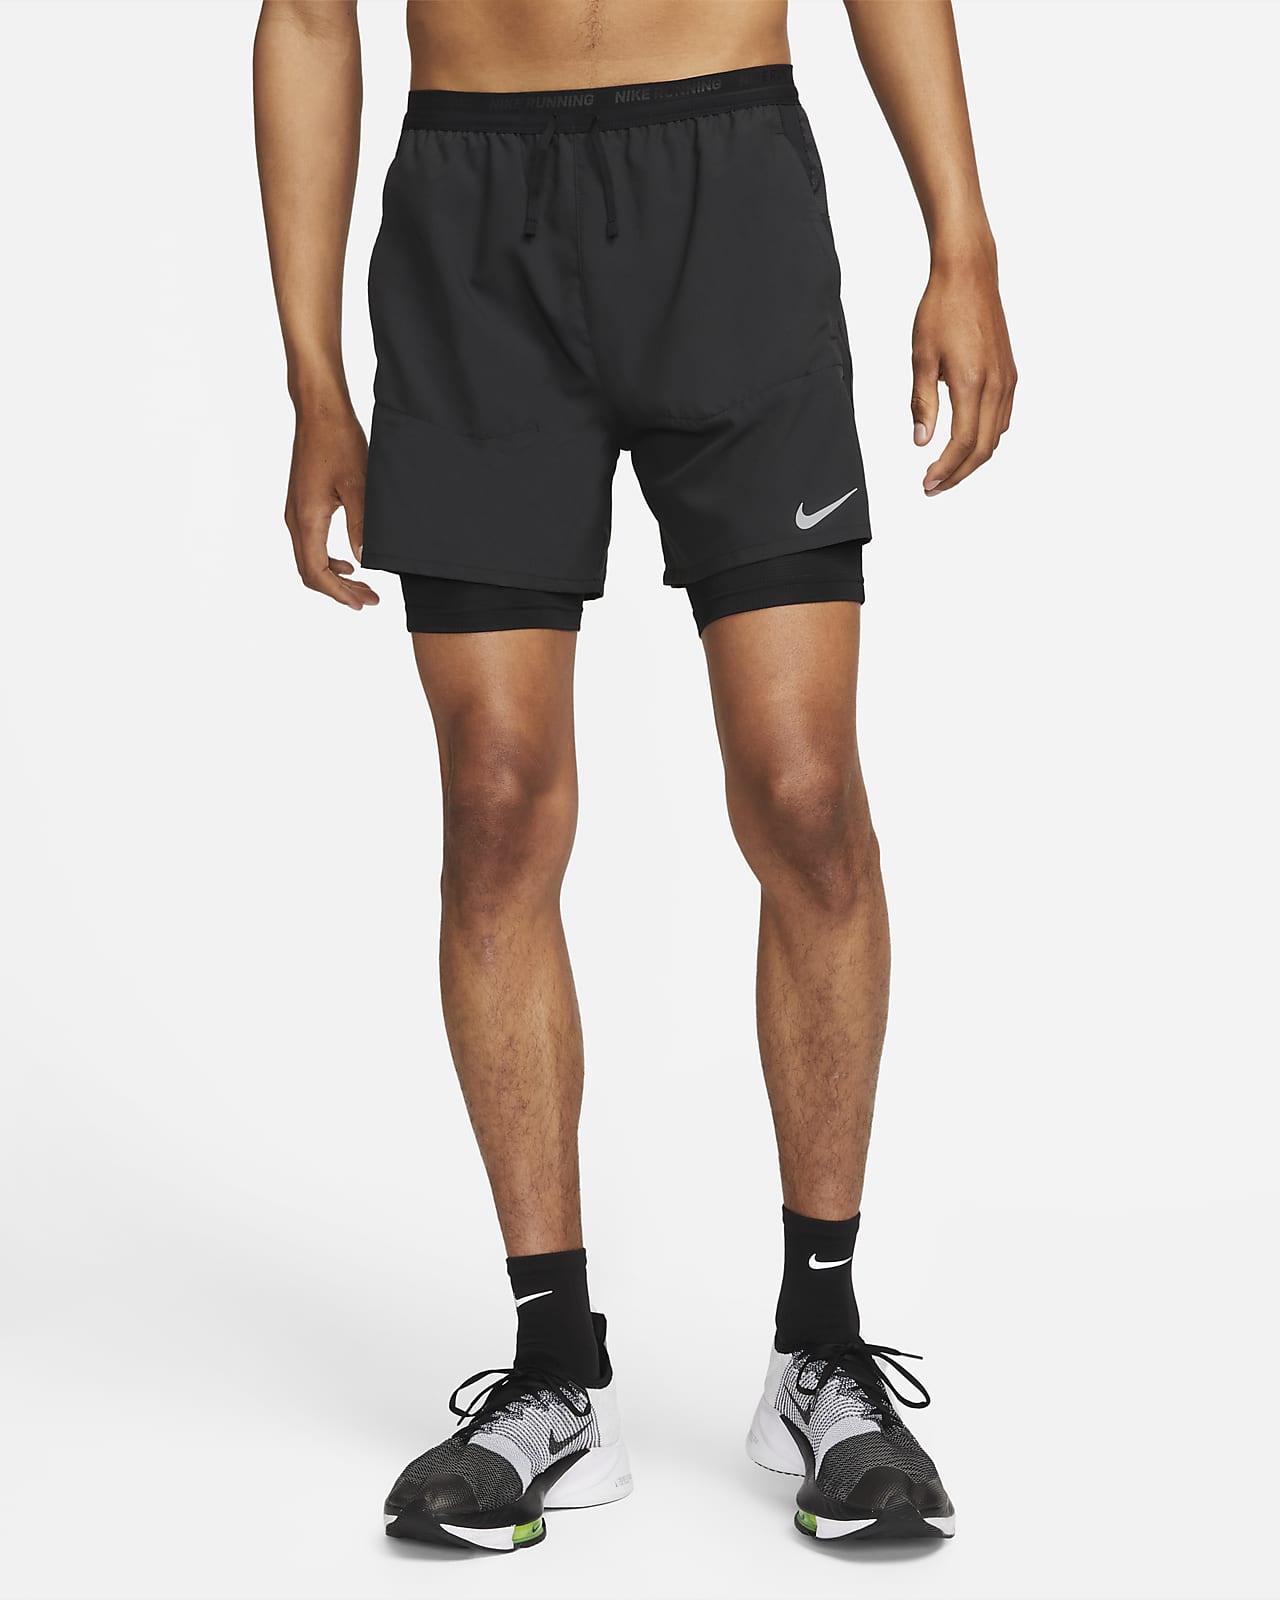 Stride corto de running Dri-FIT de 13 cm - Hombre. Nike